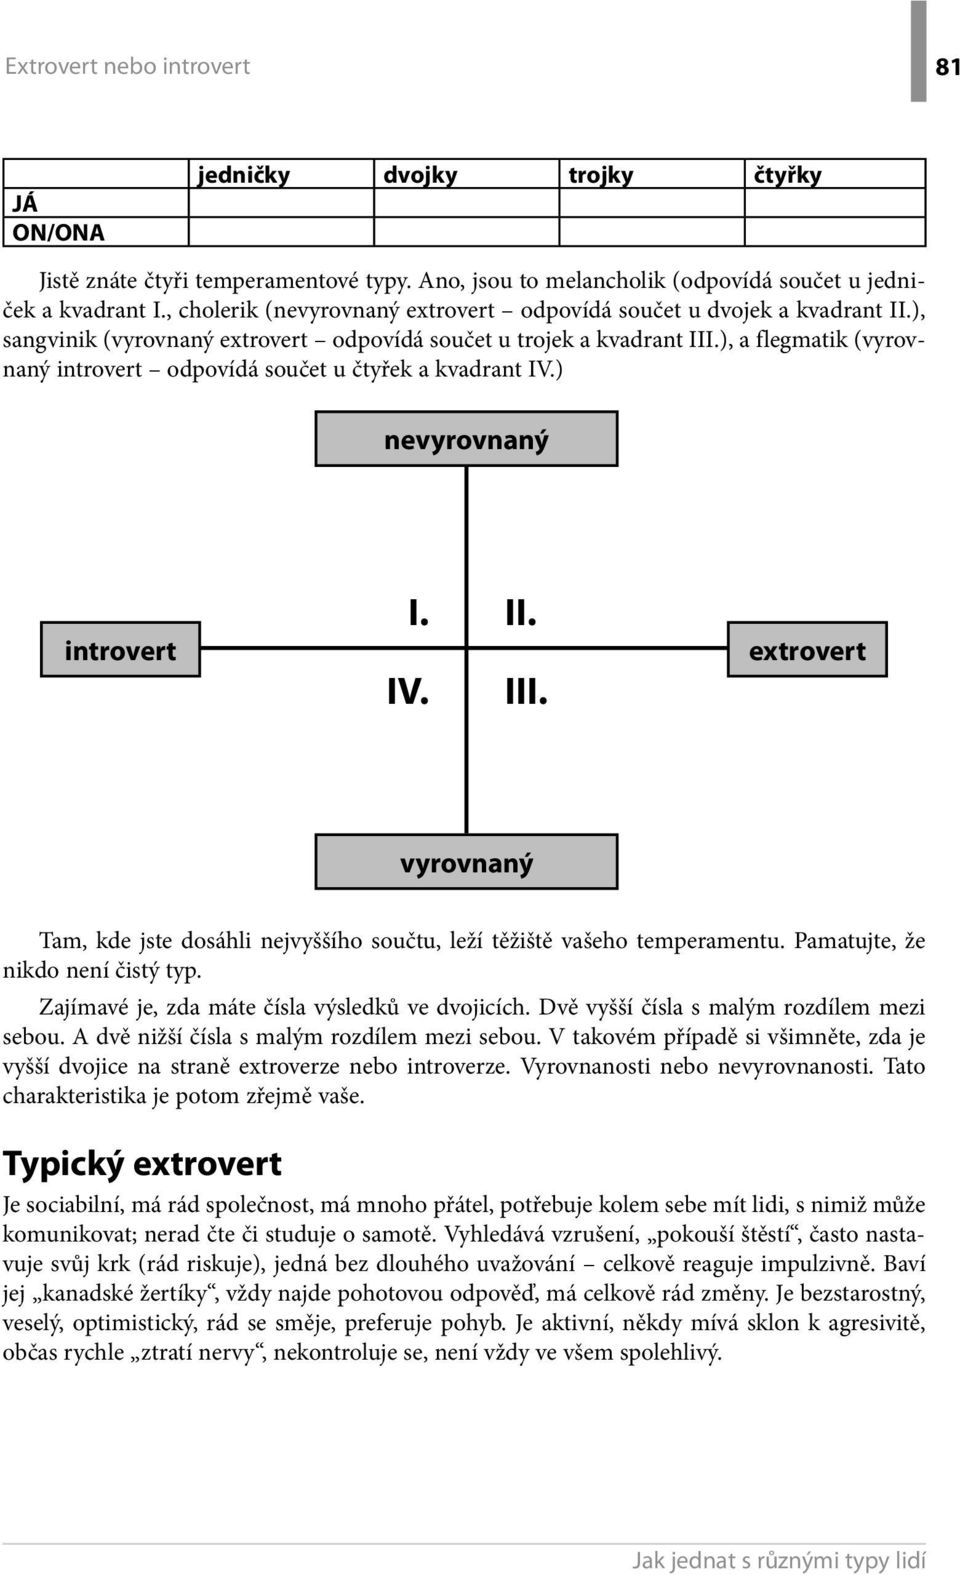 ), a flegmatik (vyrovnaný introvert odpovídá součet u čtyřek a kvadrant IV.) nevyrovnaný introvert I. IV. II. III.